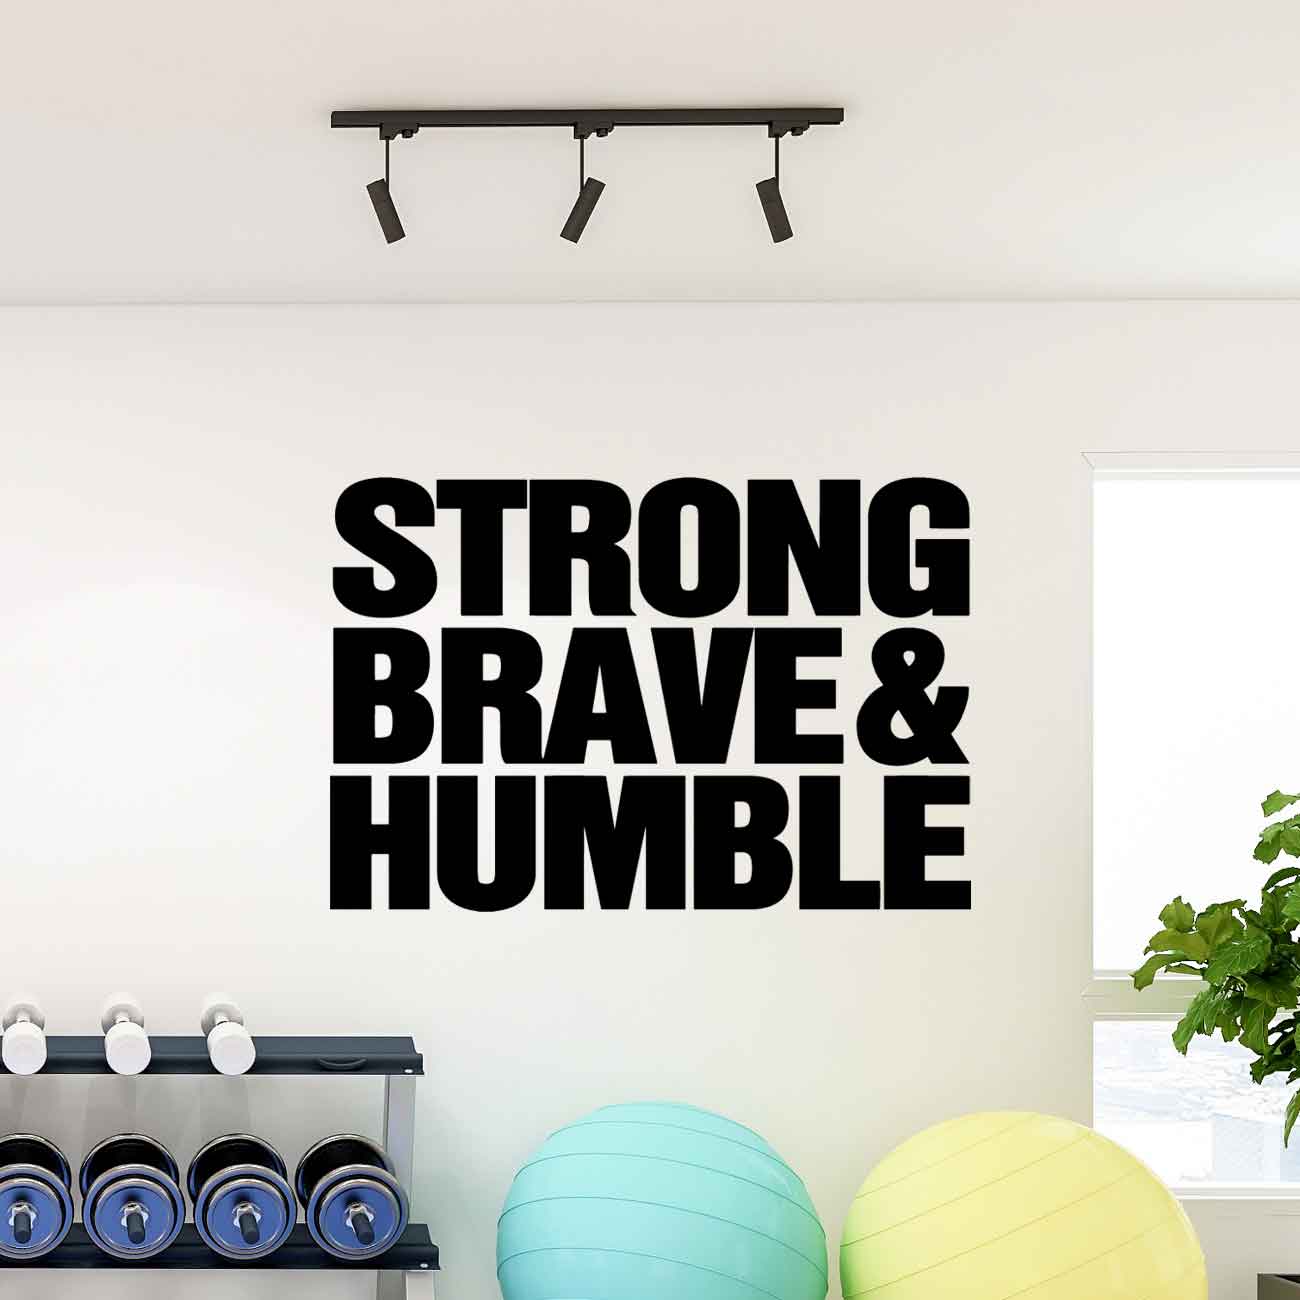 מדבקת קיר לחדר כושר באנגלית -  Strong brave and humble 2